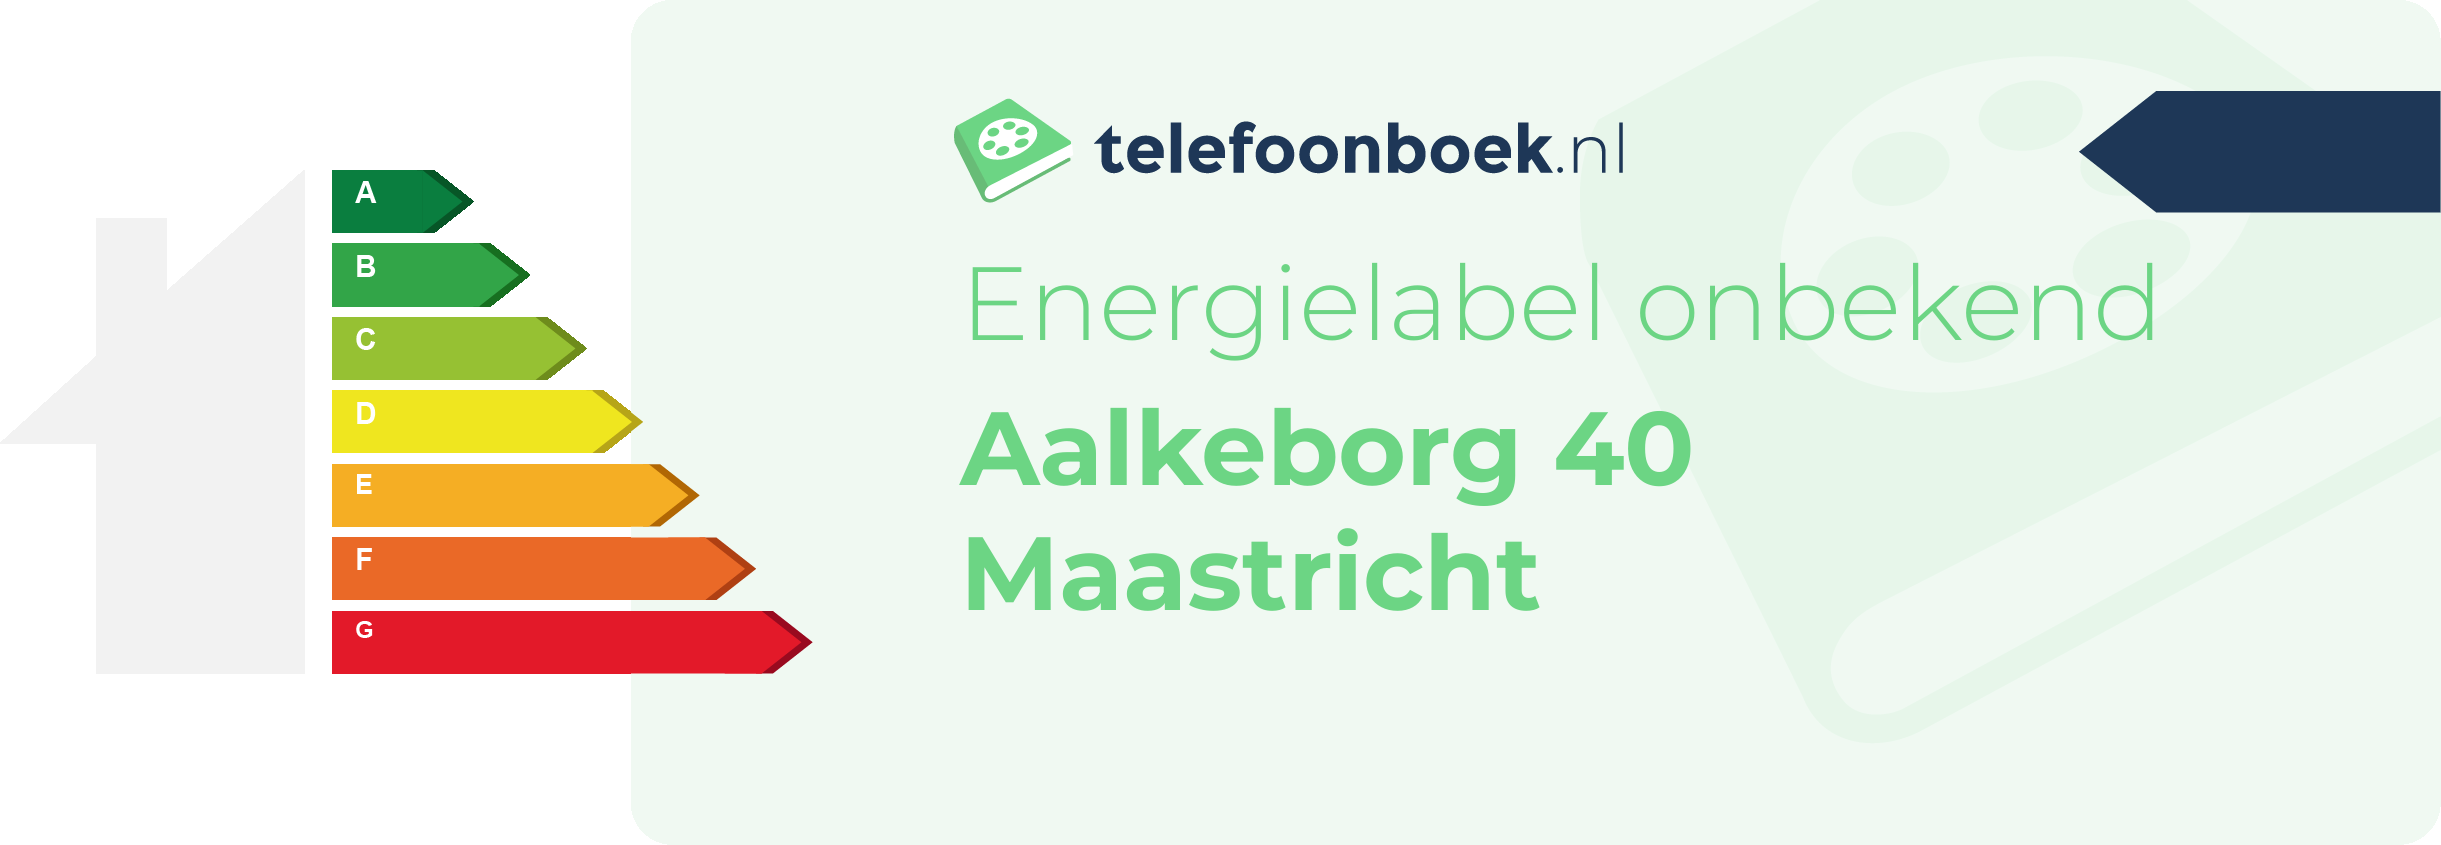 Energielabel Aalkeborg 40 Maastricht